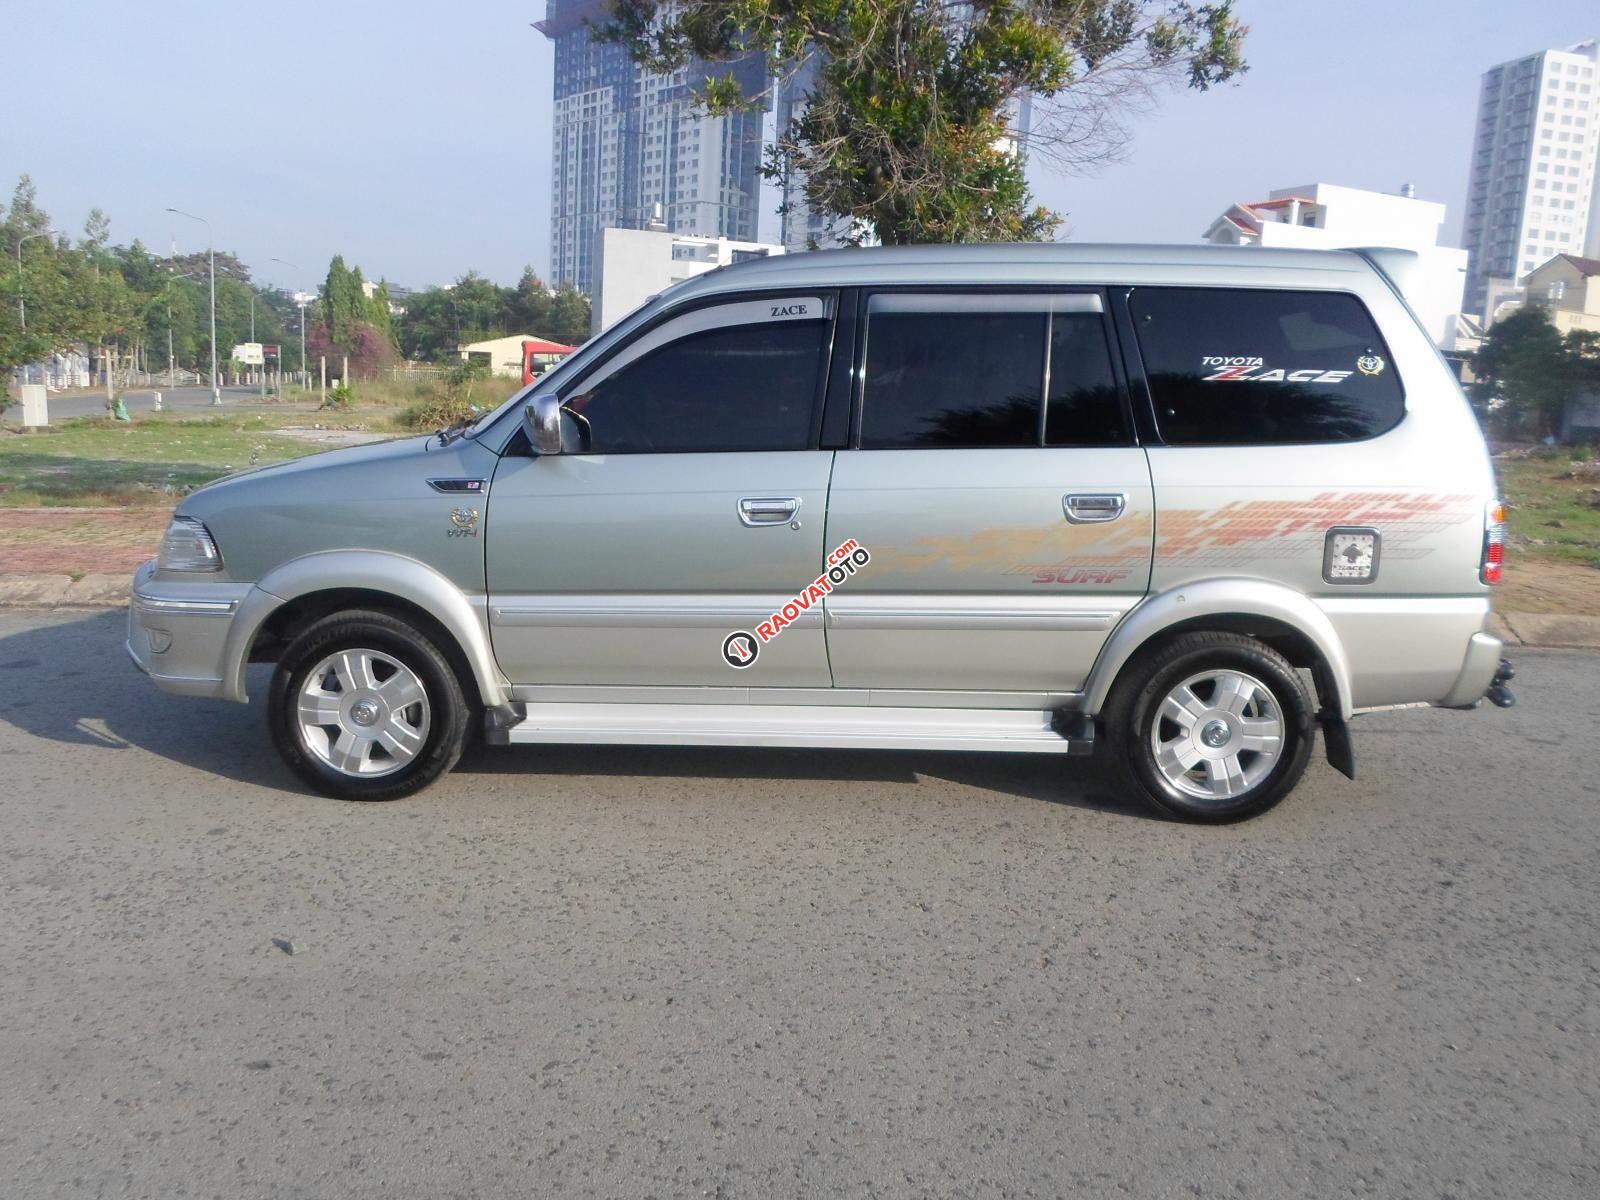 Toyota Zace Surf- 2005 - Ghi bạc - Mới nhất Việt Nam - Ko có đối thủ - Sơn rin 100%-2